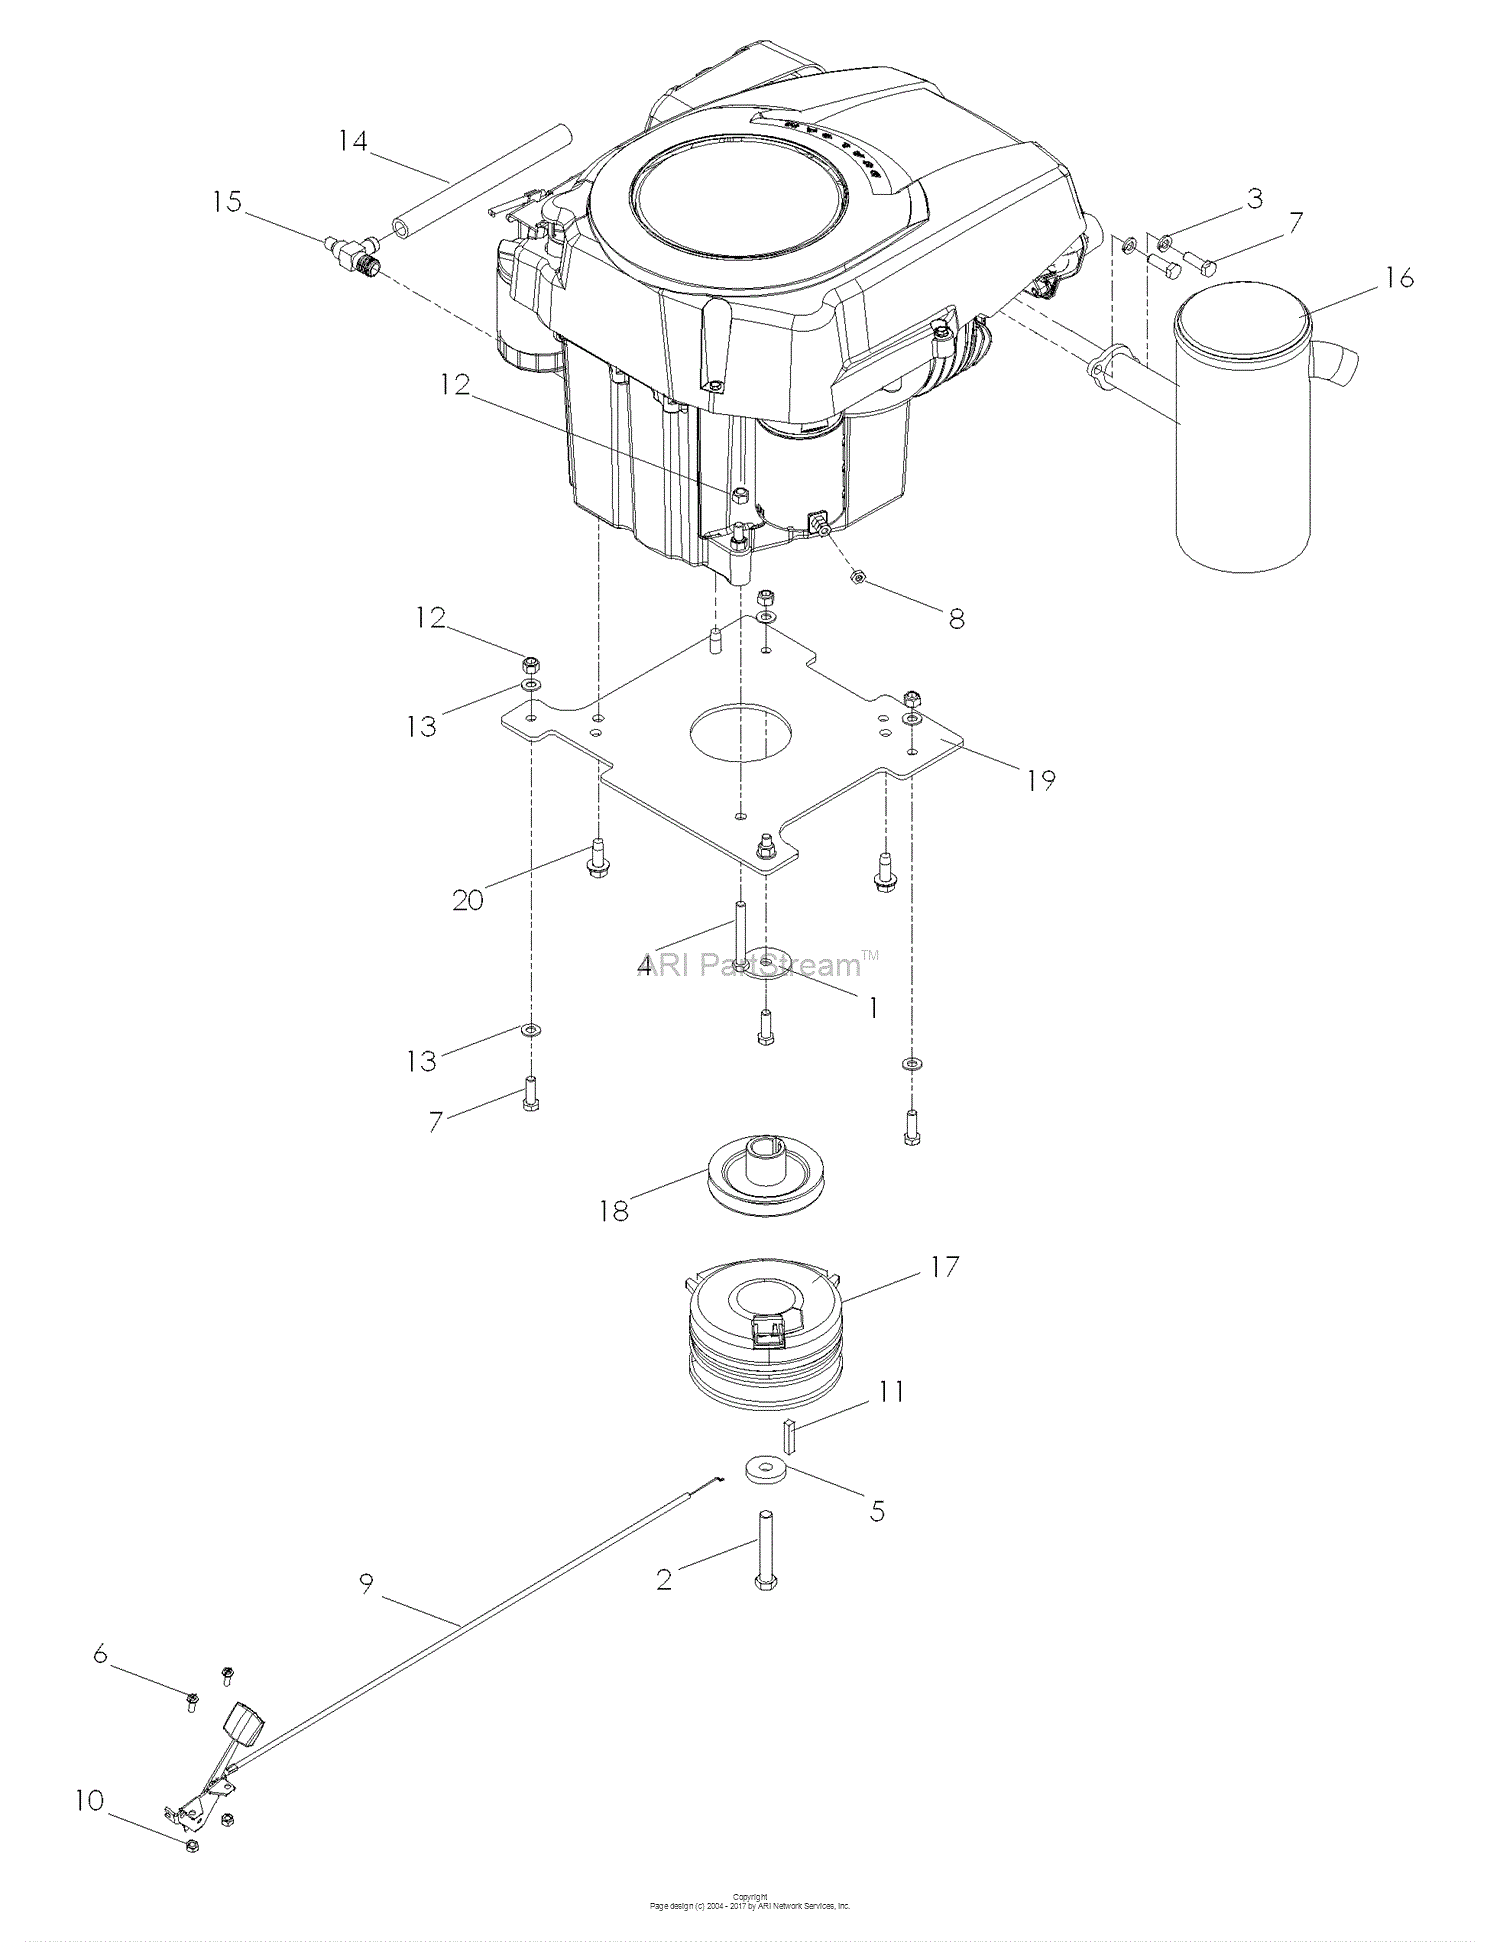 Dixon SPEEDZTR 44 20HP KOHLER - 968999538 (2008) Parts ... 24 hp kohler wiring diagram 